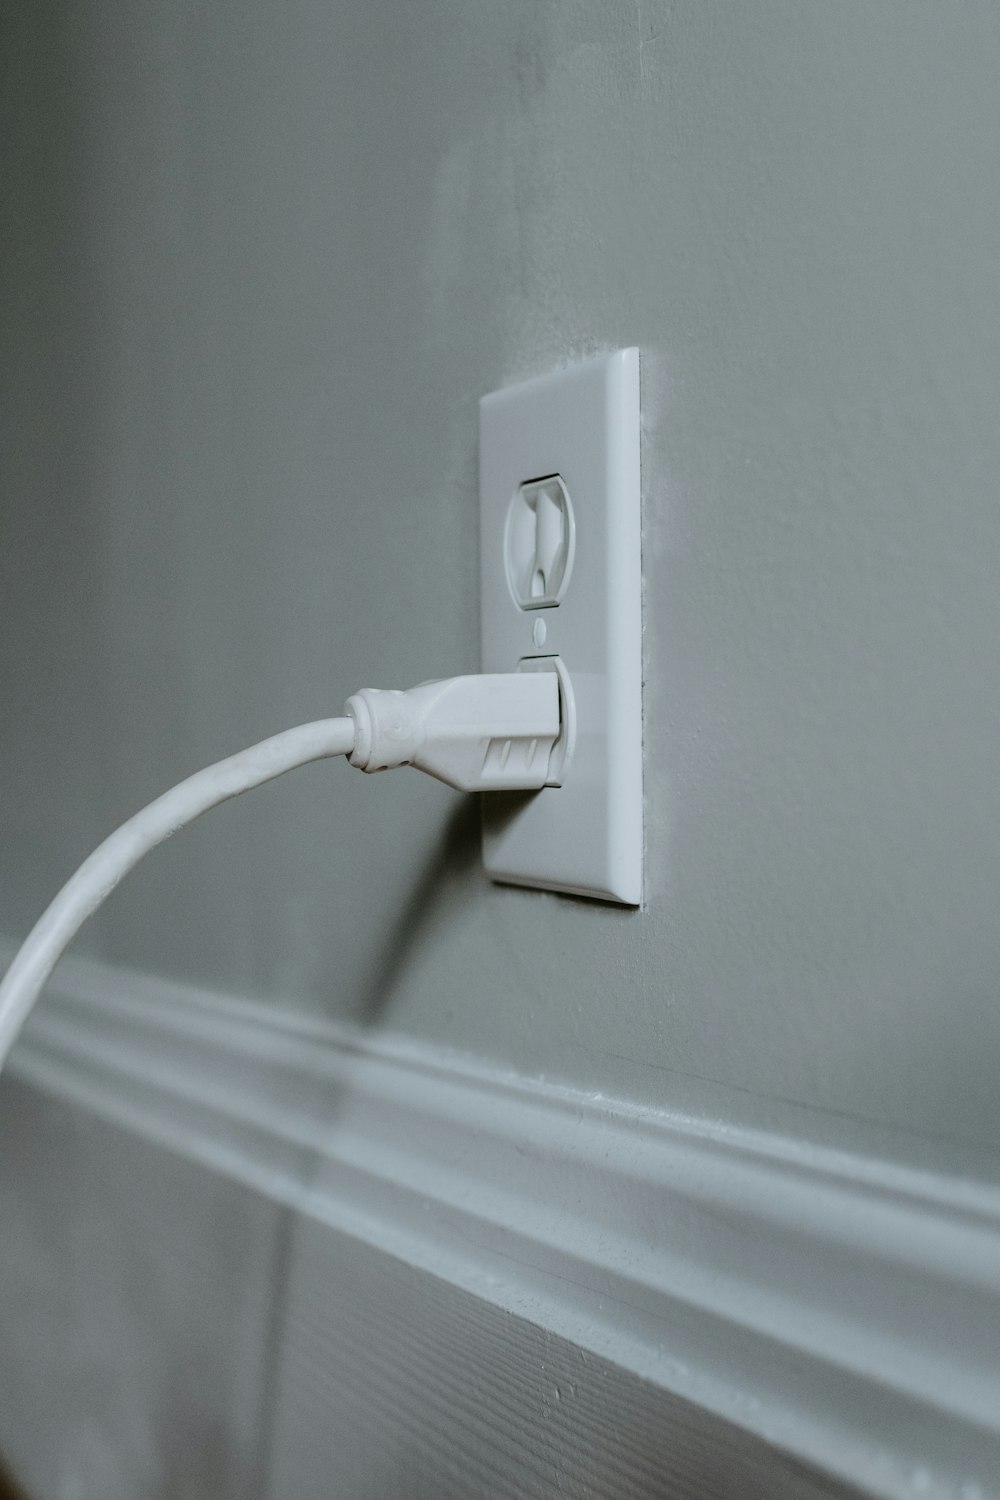 Câble USB blanc branché sur une prise électrique blanche